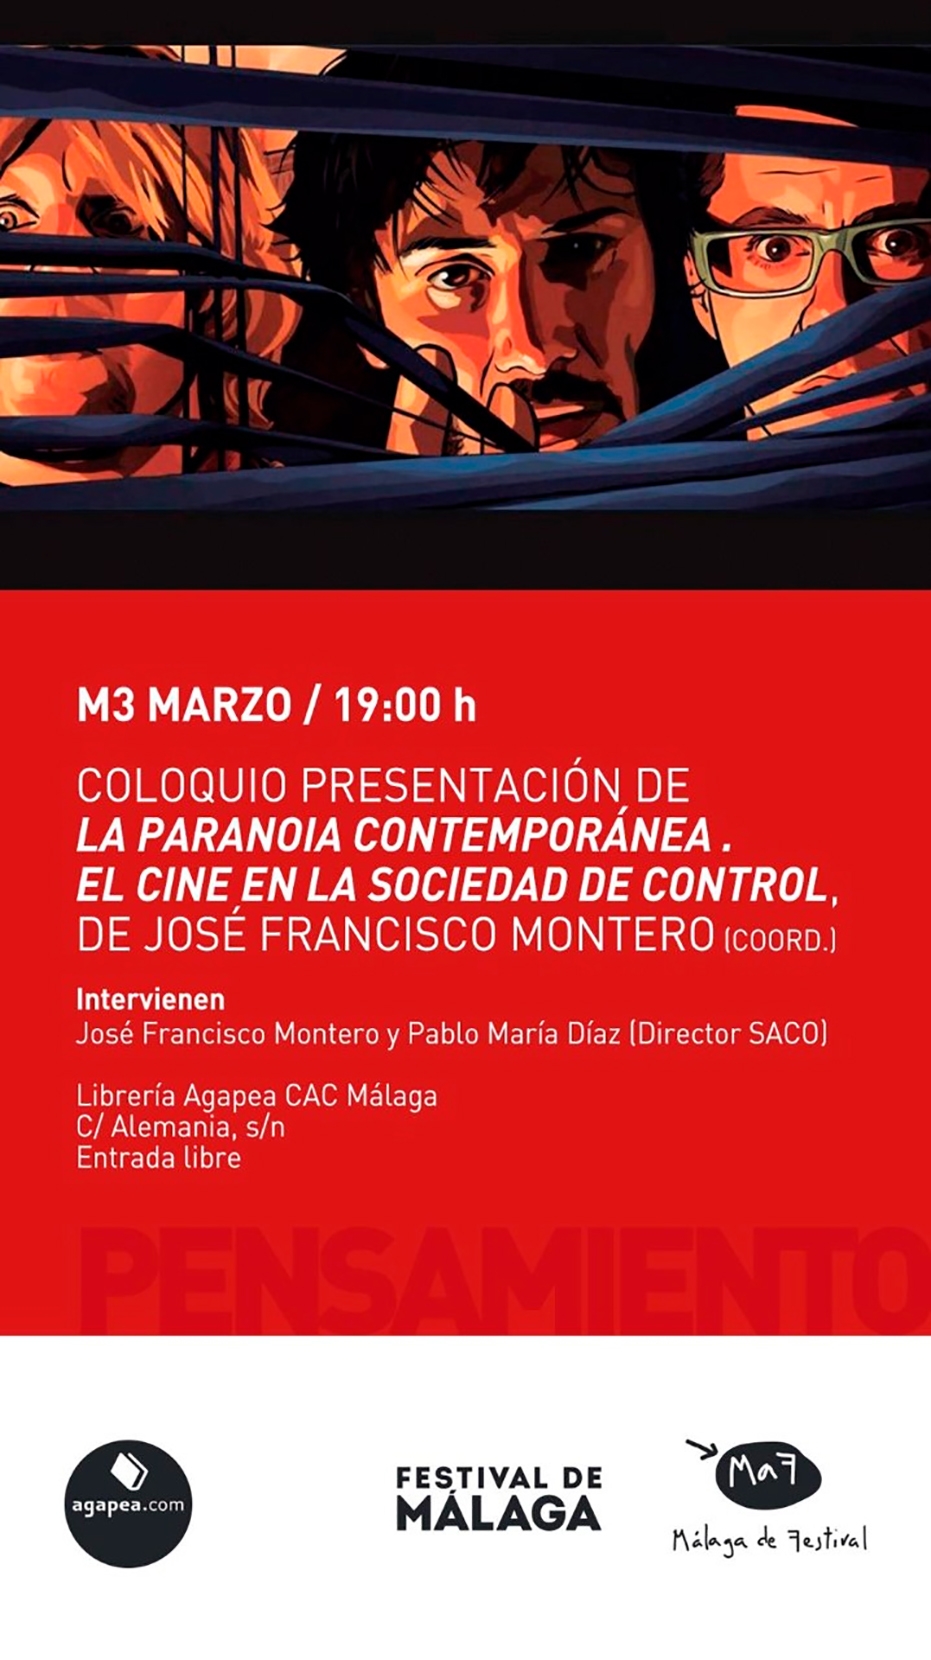 Coloquio presentación de La paranoia contemporánea. El cine en la sociedad de control, de José Francisco Montero (coord.)